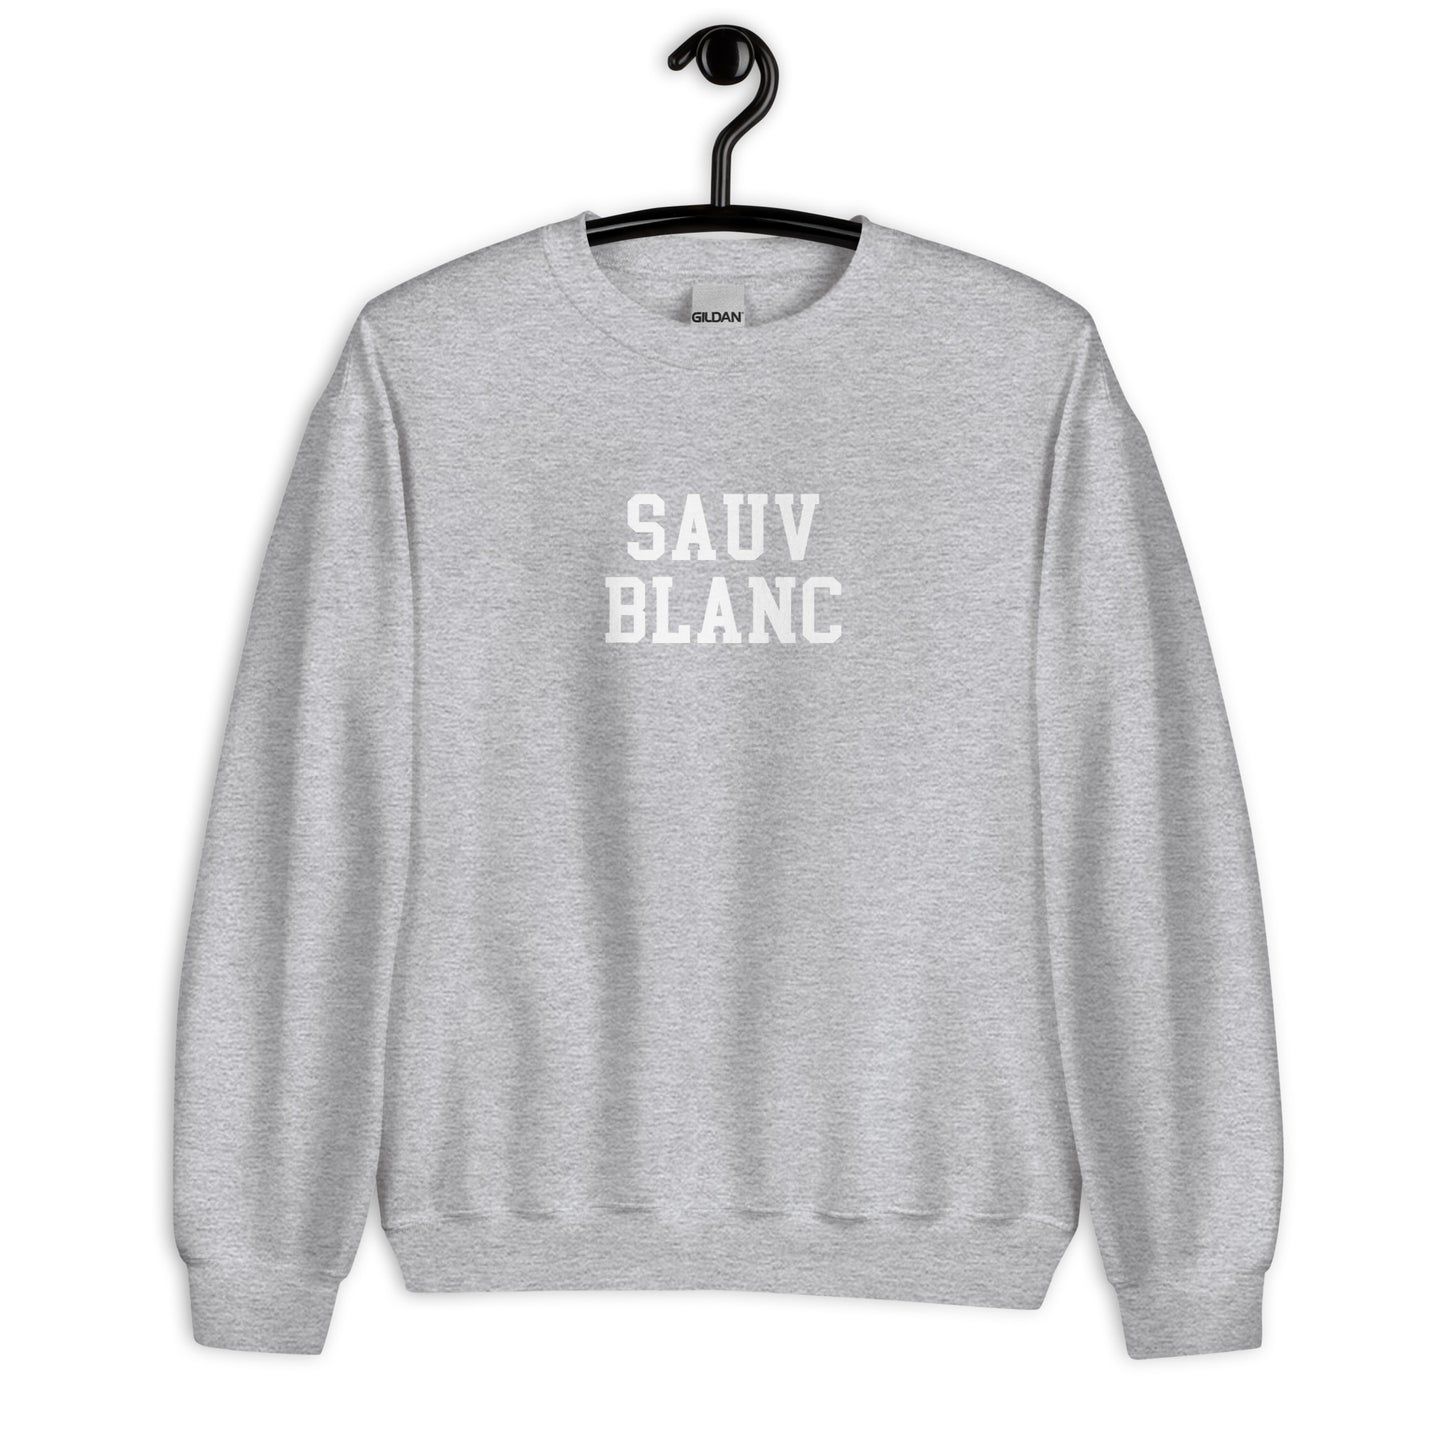 Sauv Blanc Sweatshirt - Straight Font